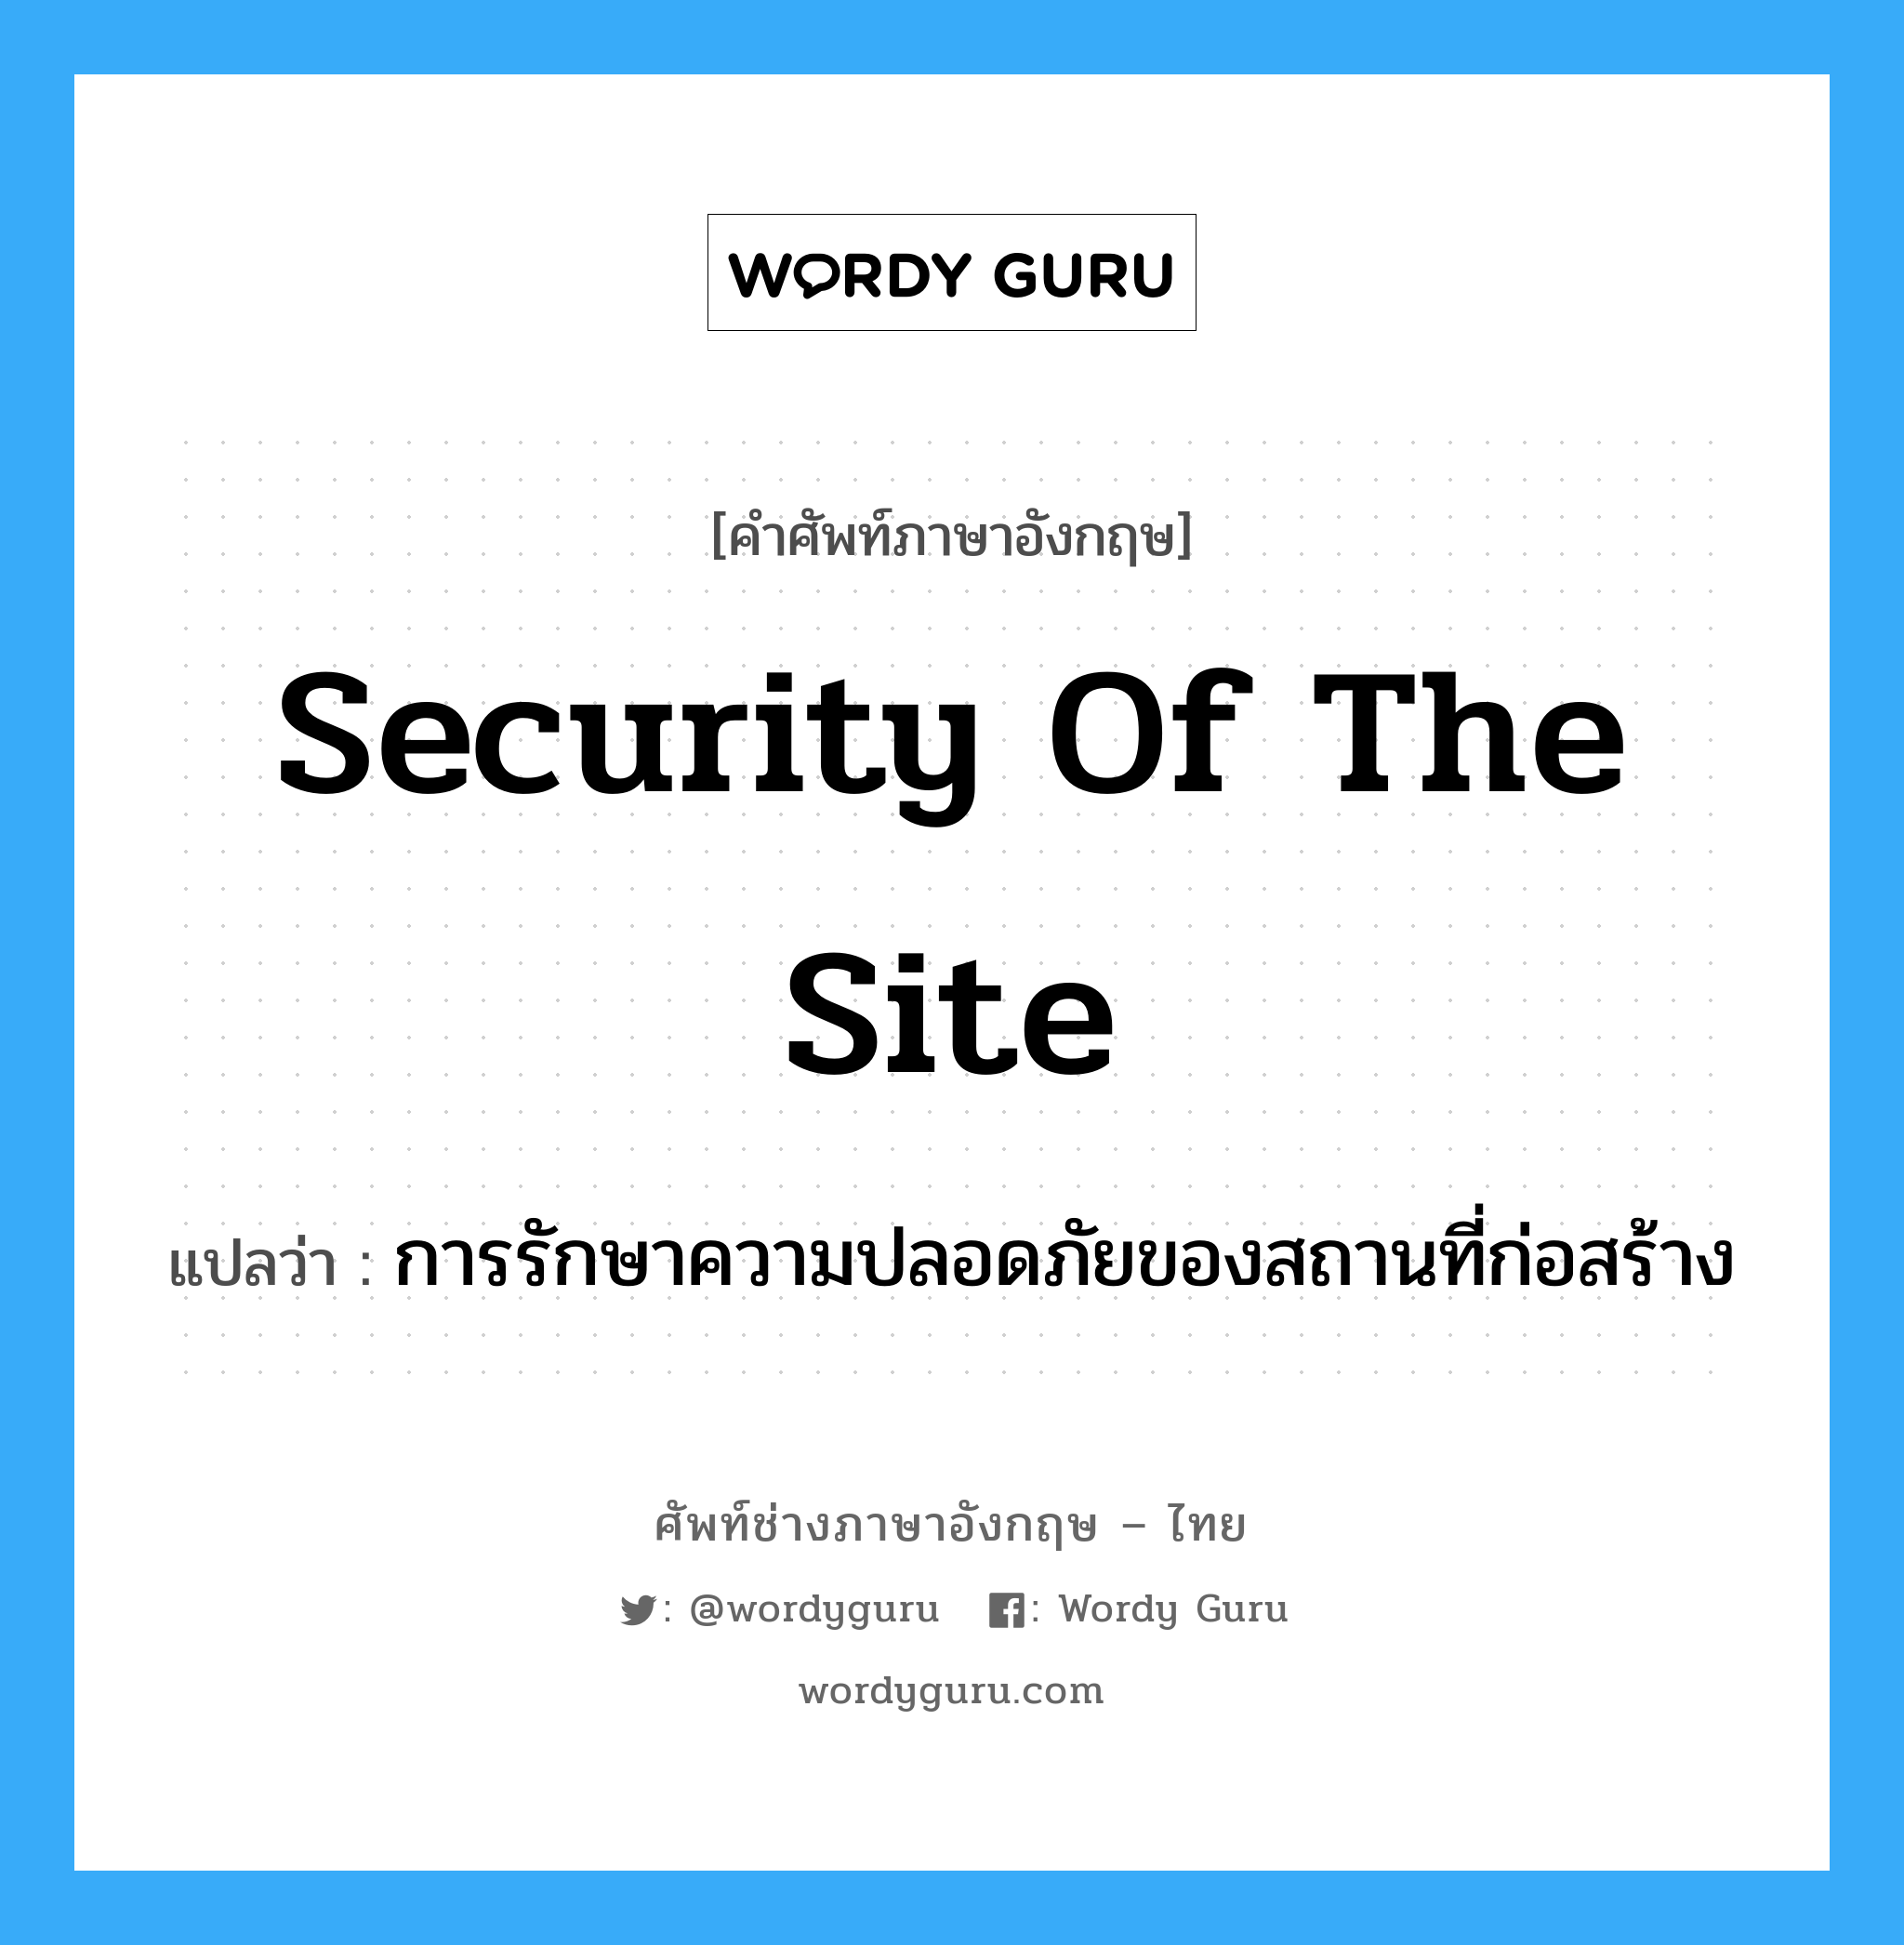 Security of the Site แปลว่า?, คำศัพท์ช่างภาษาอังกฤษ - ไทย Security of the Site คำศัพท์ภาษาอังกฤษ Security of the Site แปลว่า การรักษาความปลอดภัยของสถานที่ก่อสร้าง